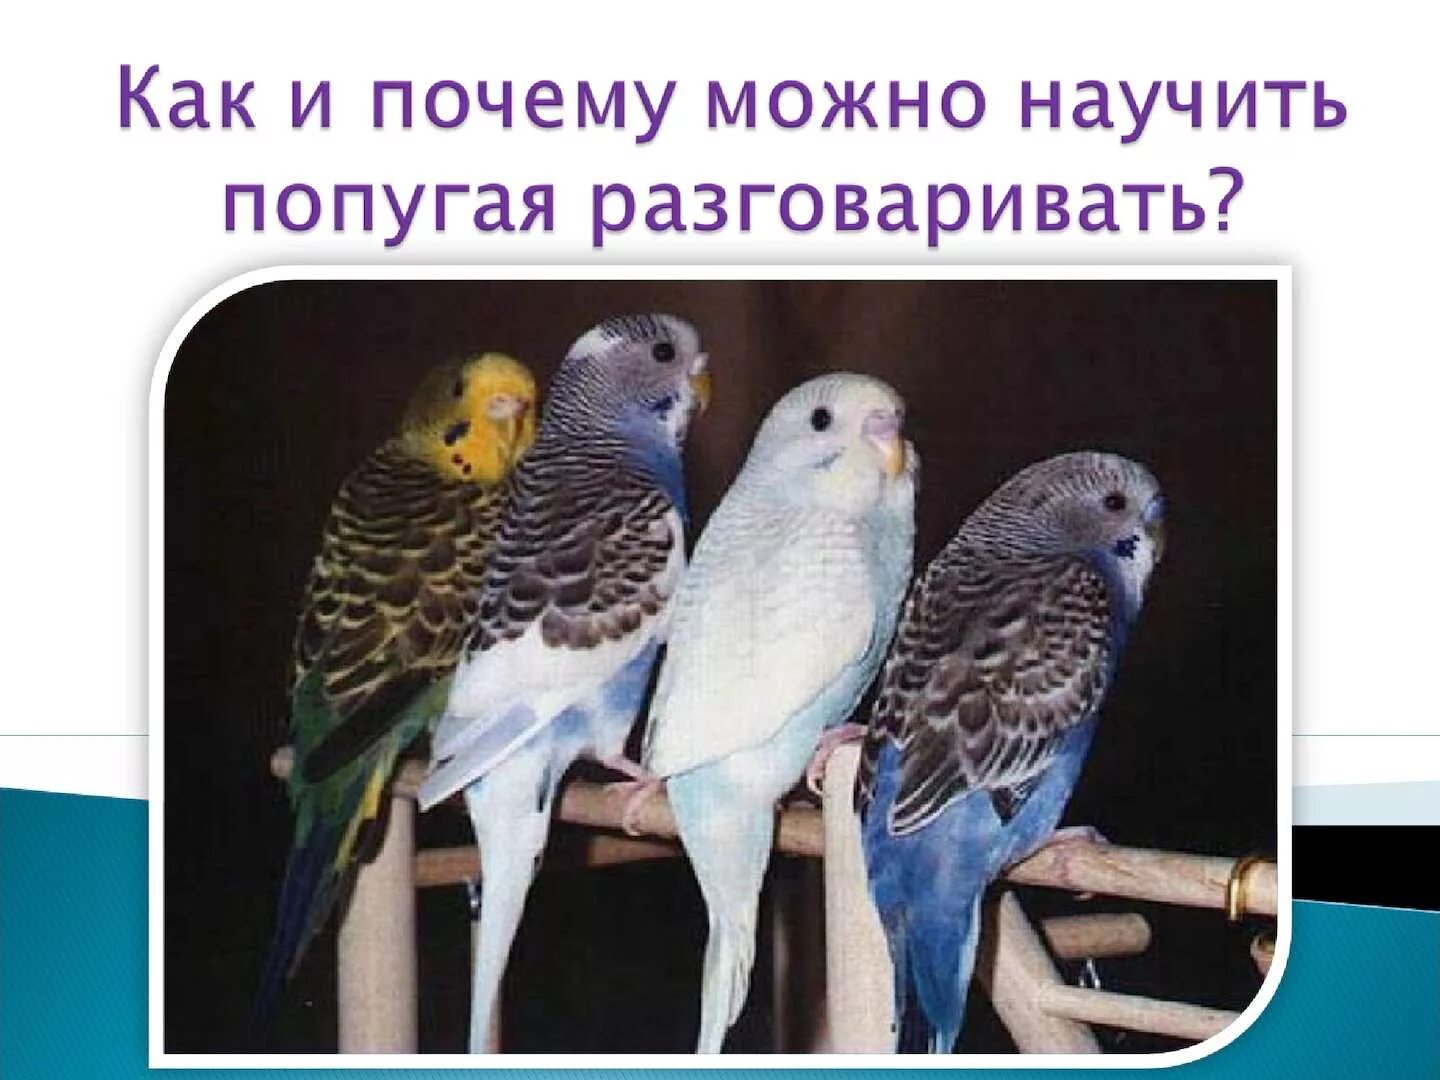 Какие слова говорят попугаи. Почему попугаи разговаривают. Исследовательская работа почему попугаи могут разговаривать. Попугай который умеет разговаривать. Каких попугаев можно научить говорить.